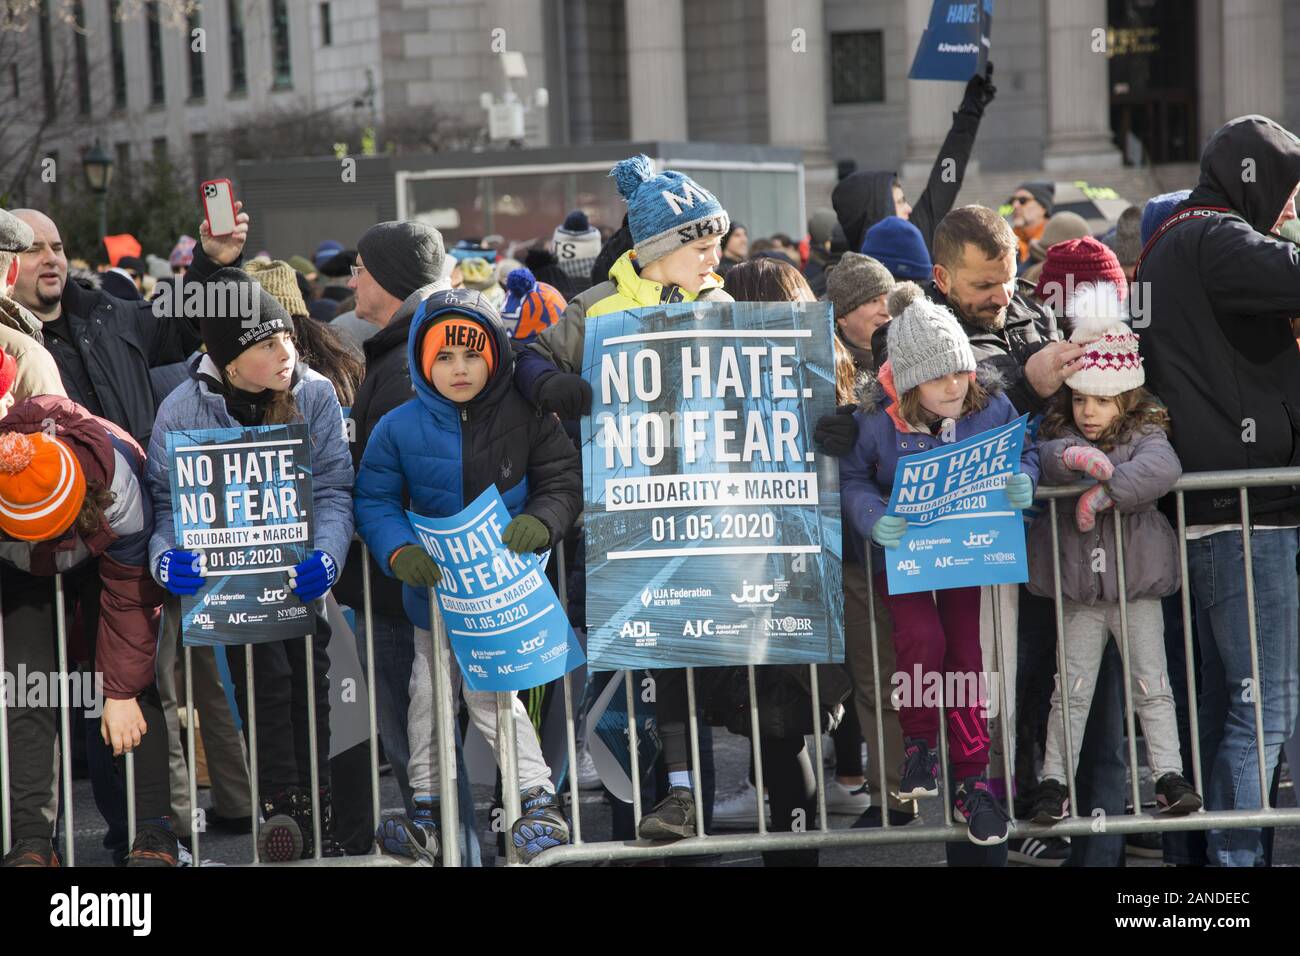 No hay odio, no hay miedo solidaridad judía de marzo en respuesta a ataques antisemitas en y alrededor de la ciudad cruzando el Puente de Brooklyn Foto de stock